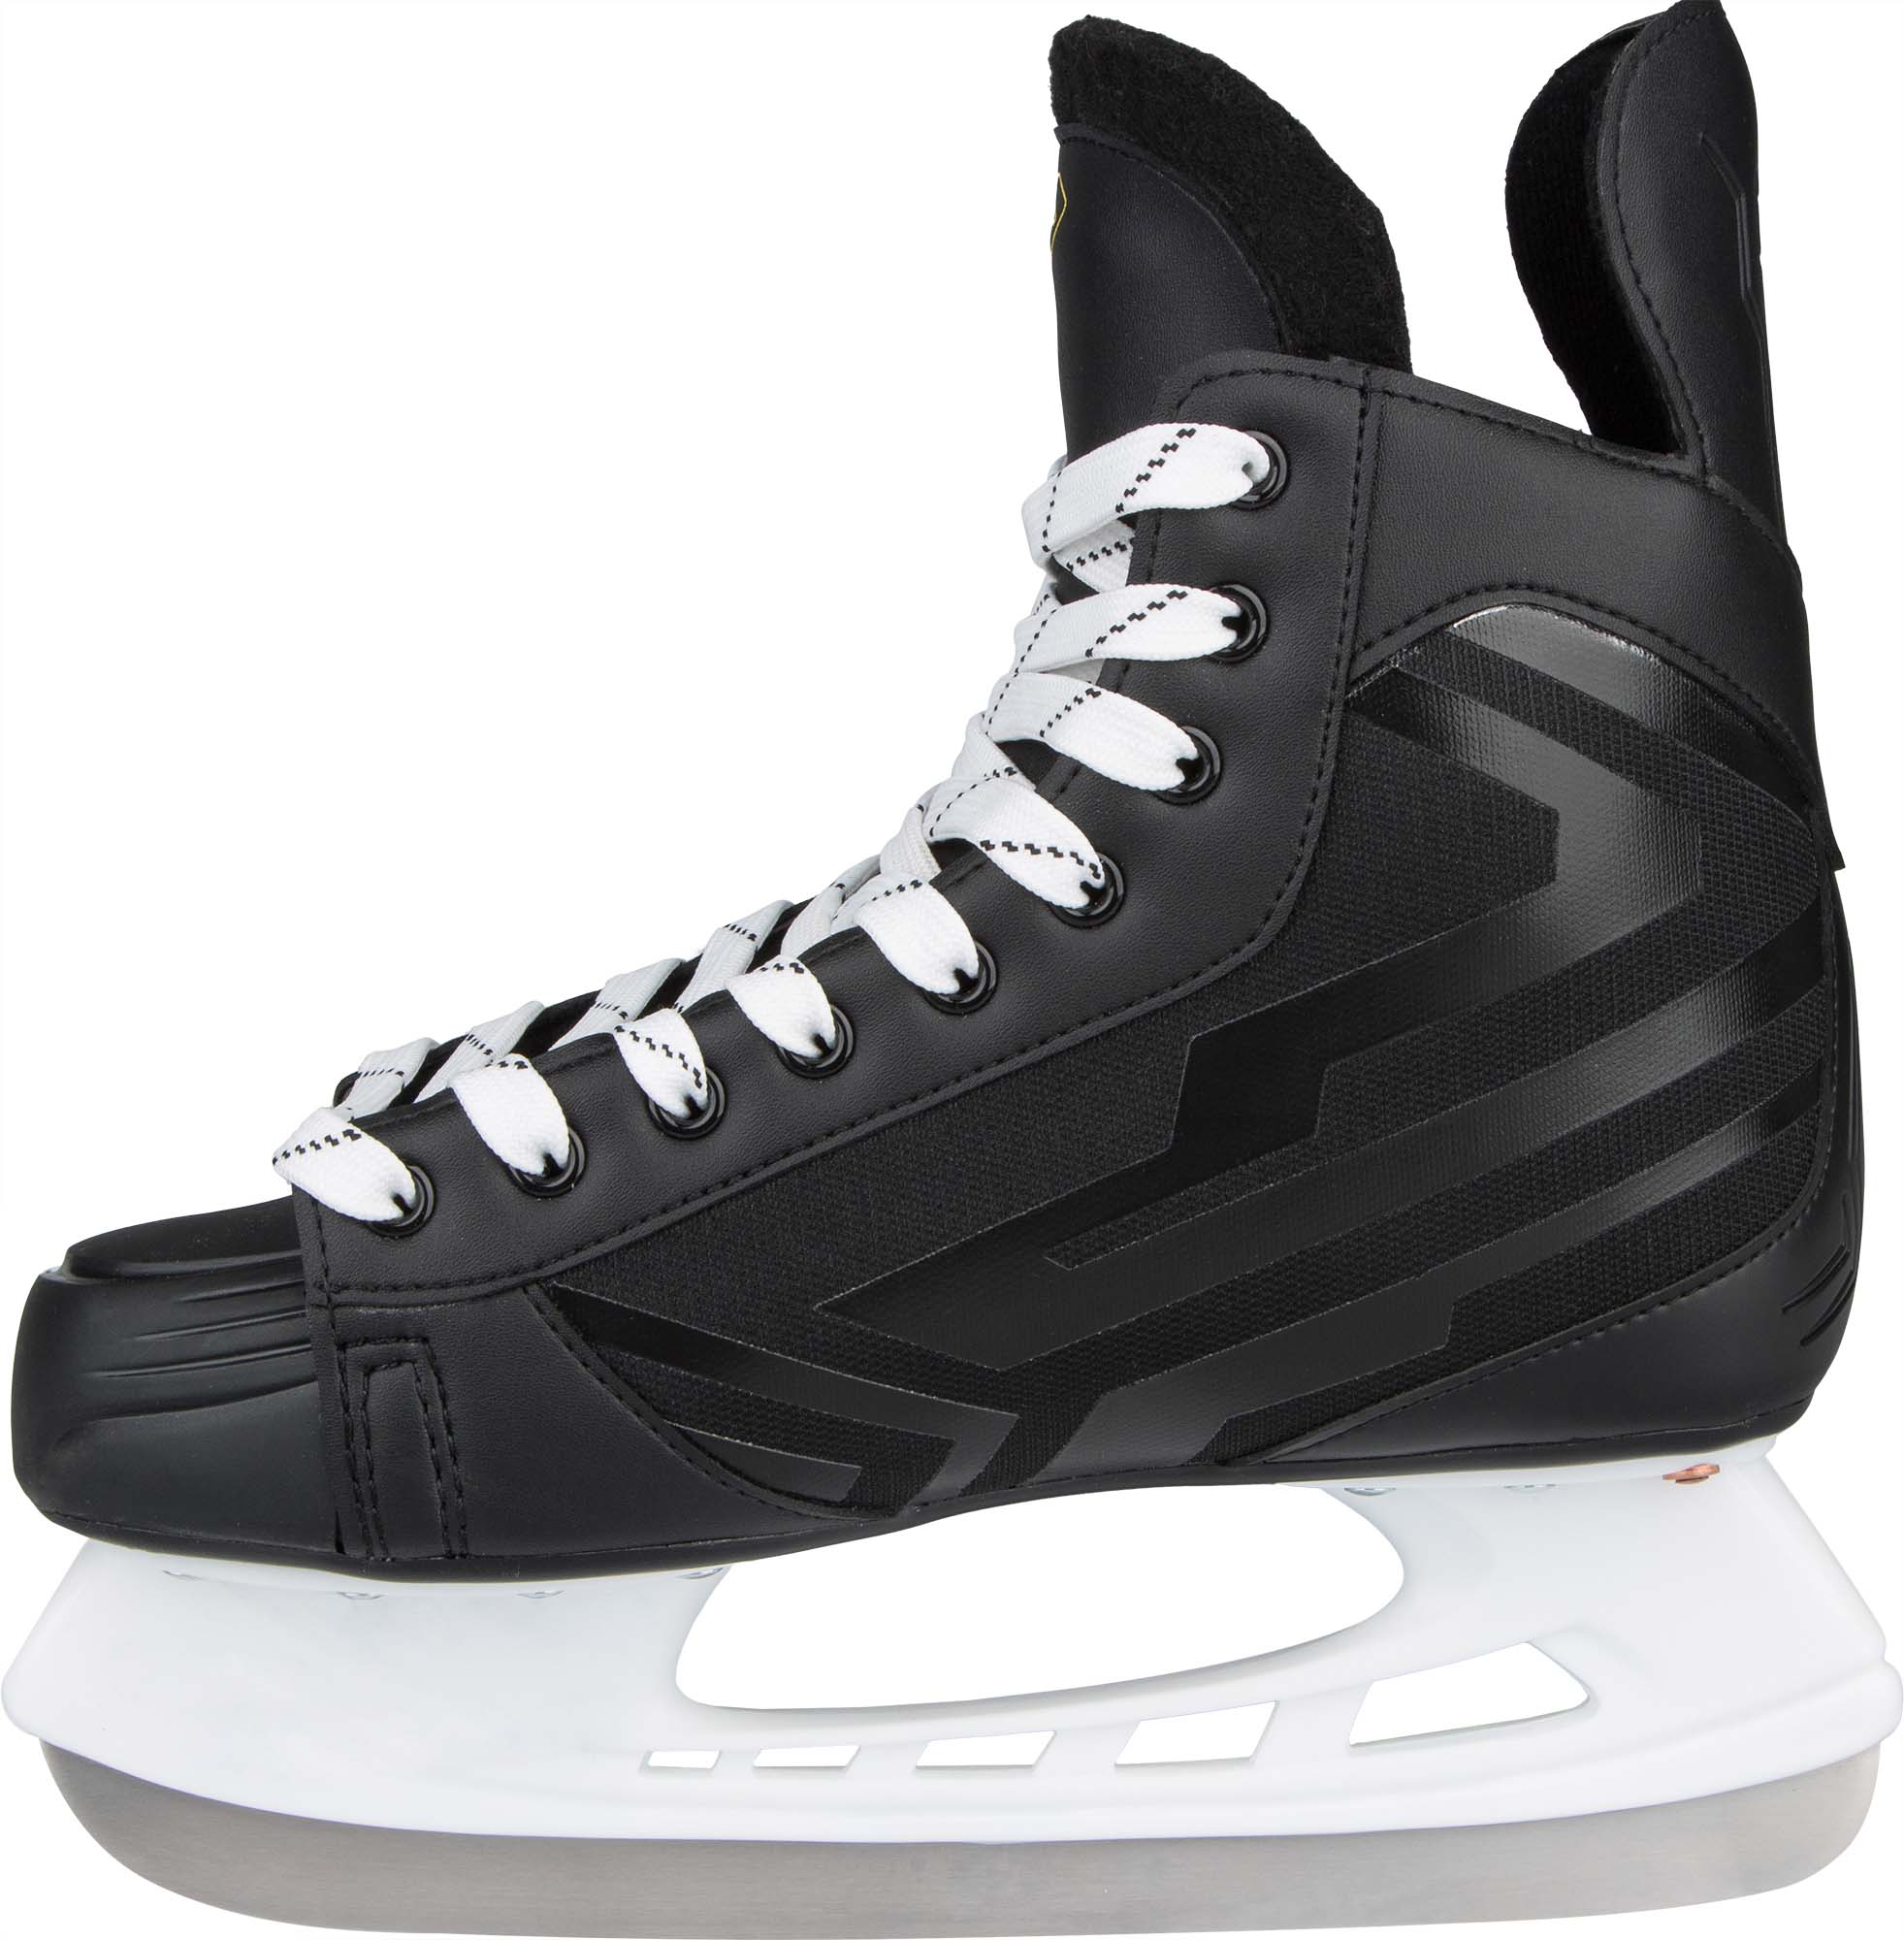 Men’s ice skates